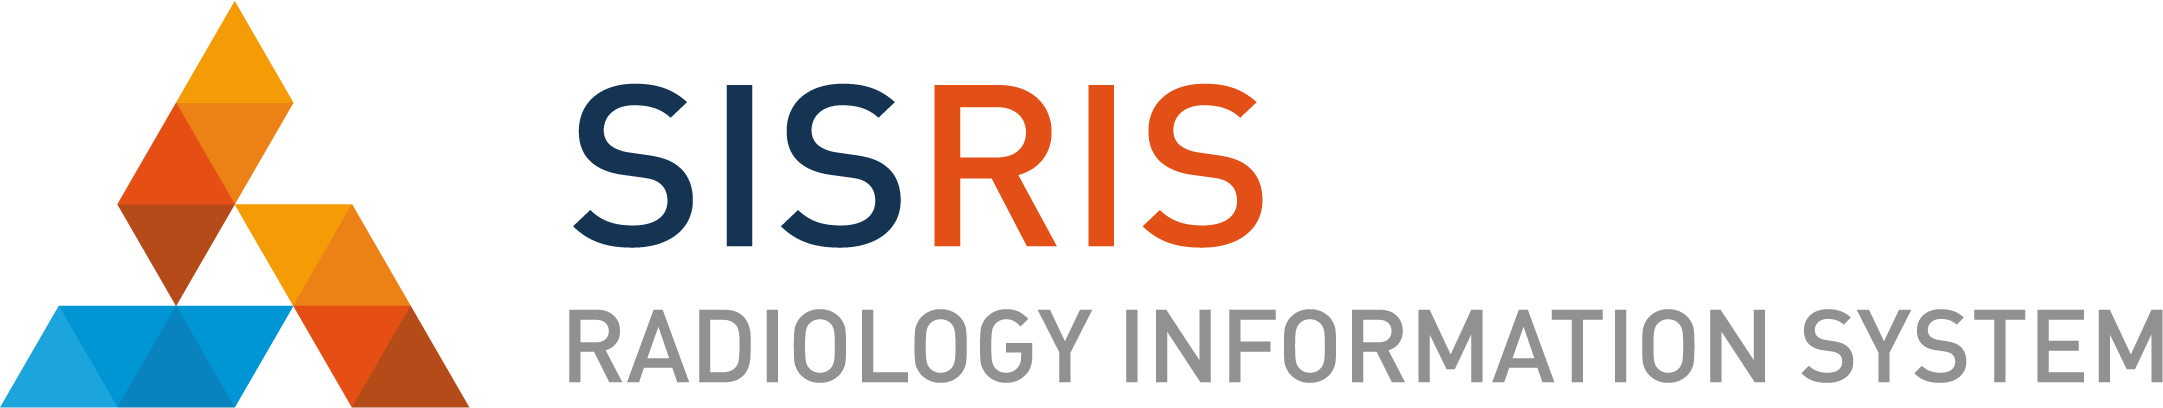 logo_SISRIS_web